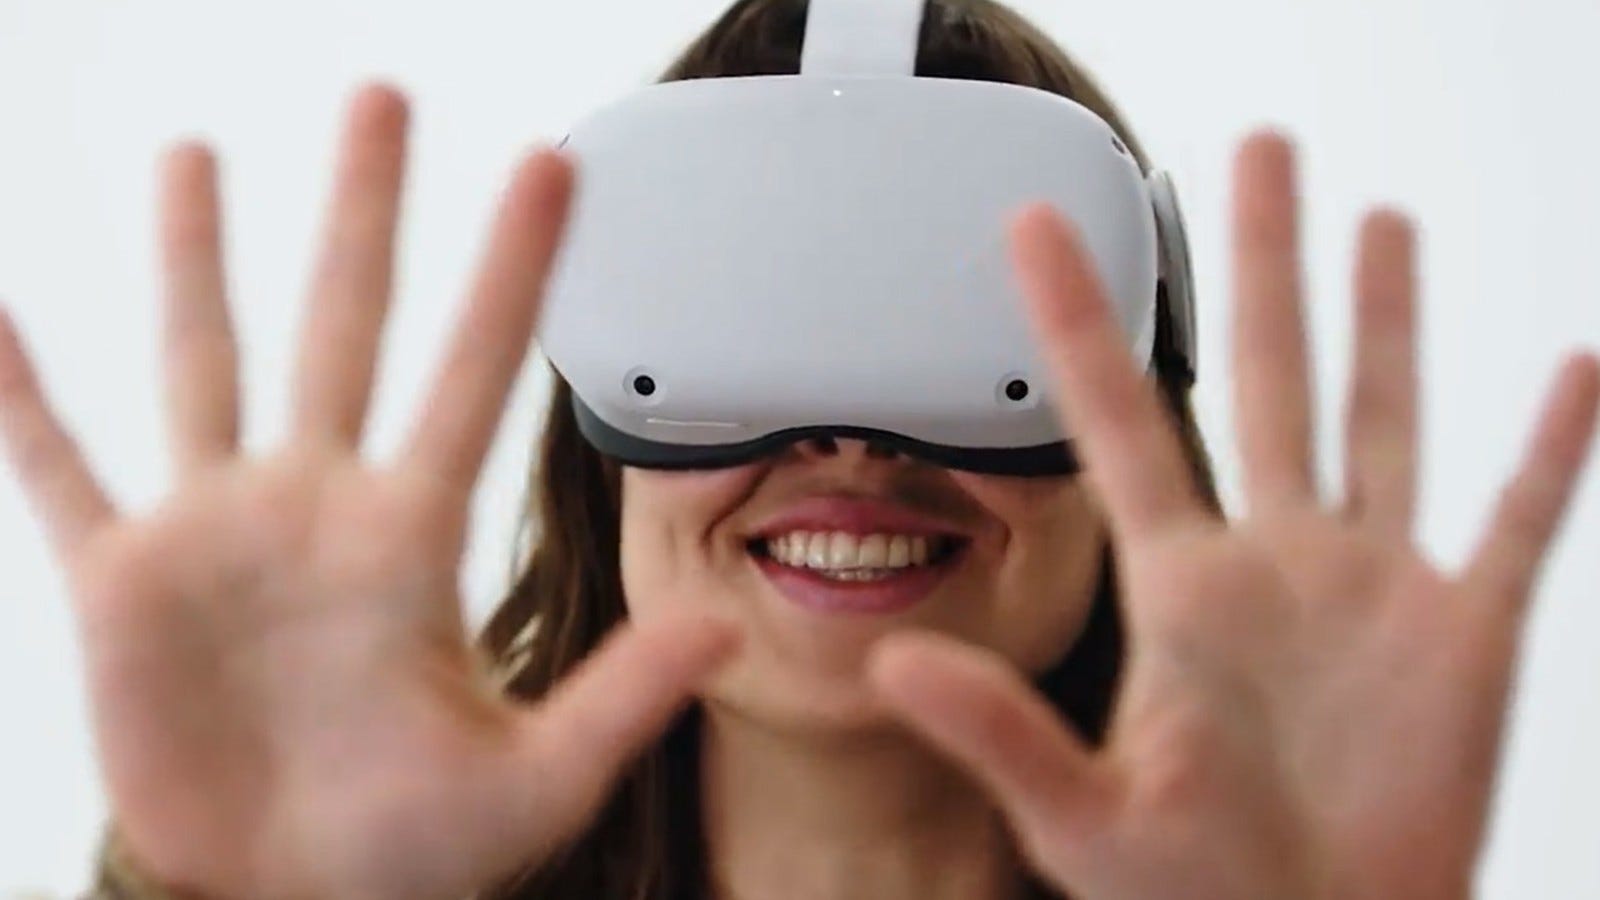 Свити фокс очки виртуальной реальности